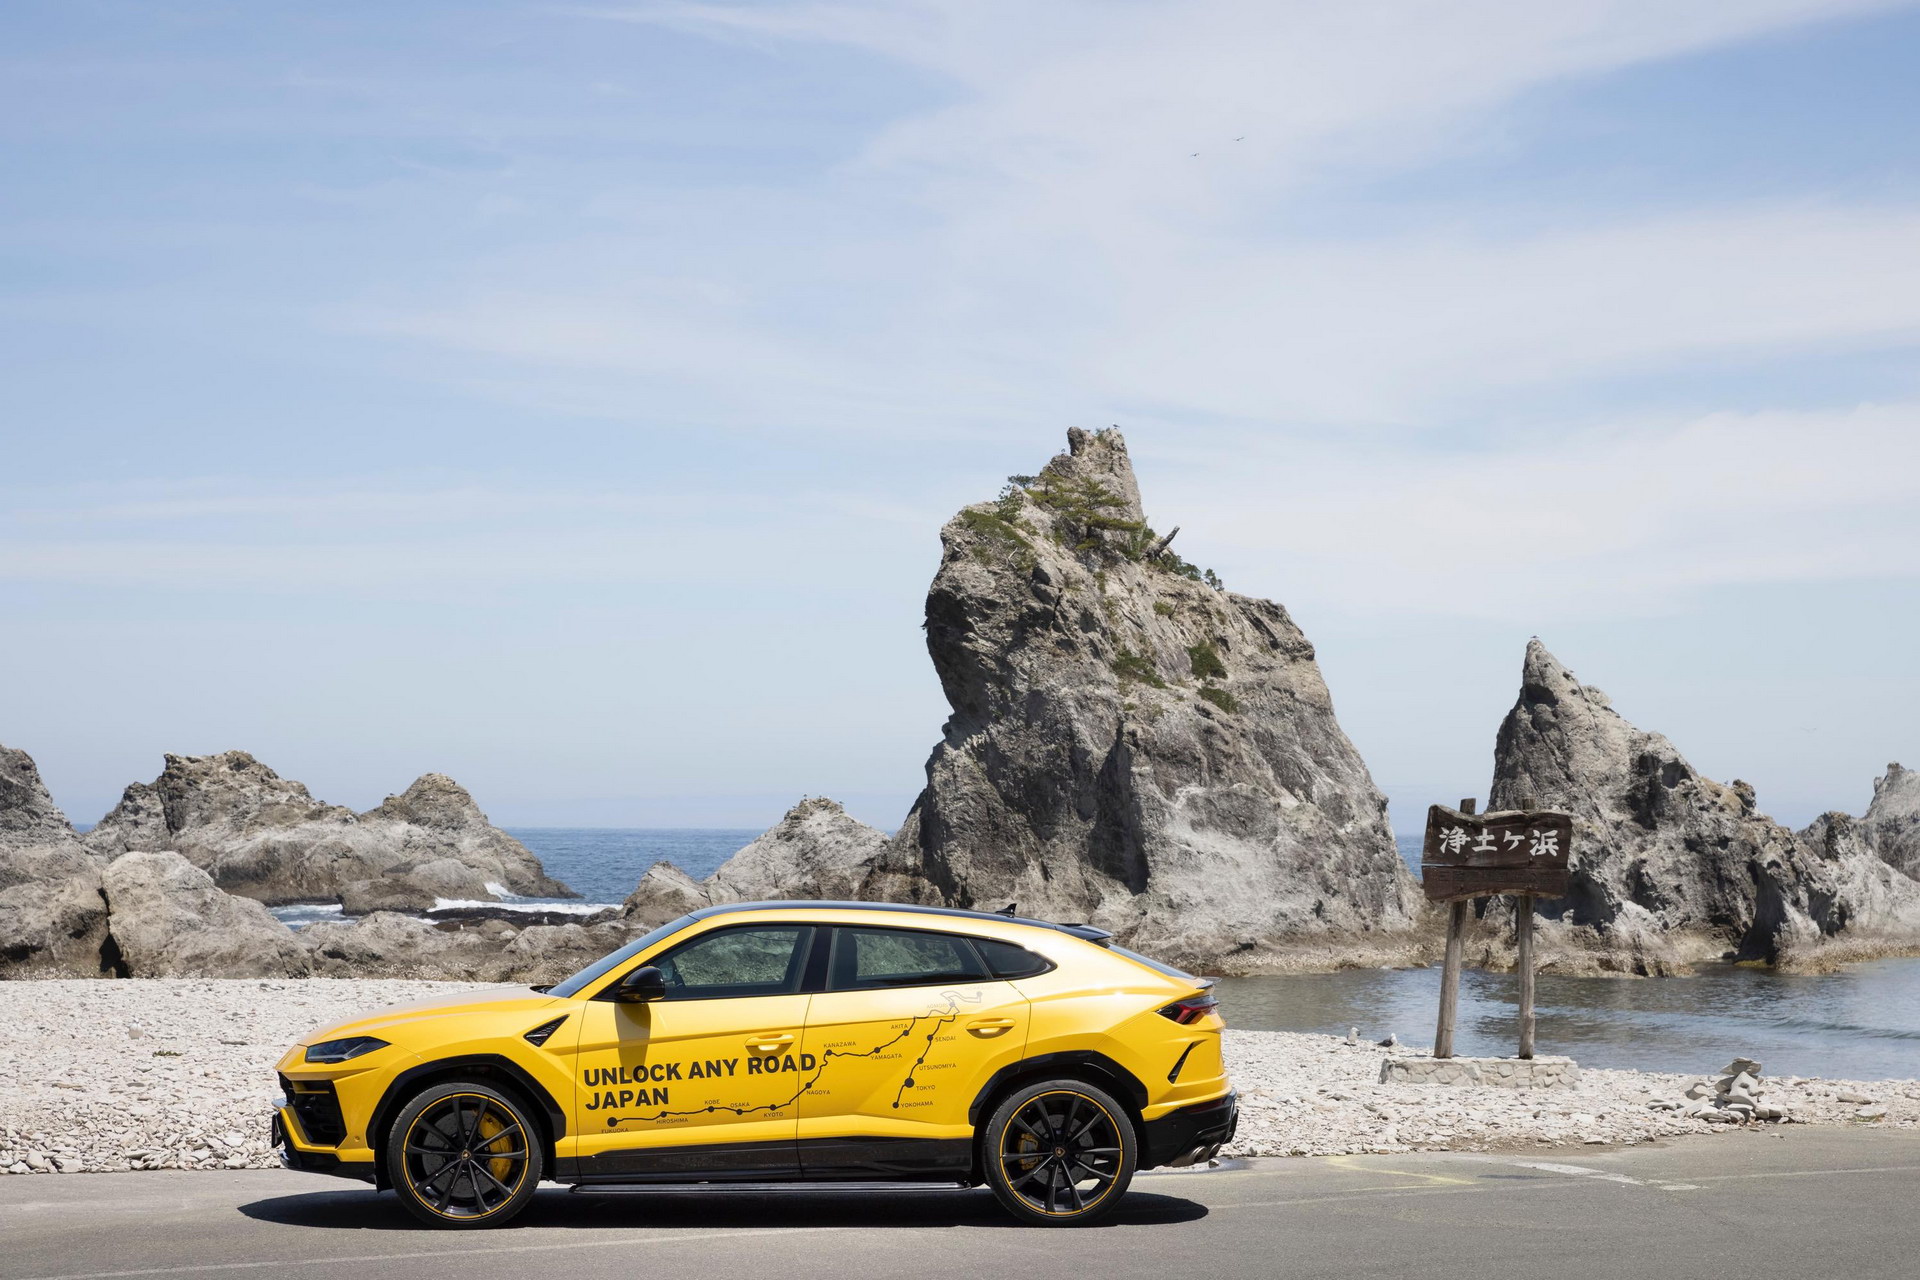 Hành trình khám phá vẻ đẹp đất nước Nhật Bản cùng Lamborghini Urus lamborghini-urus-japan-road-trip-20.jpg